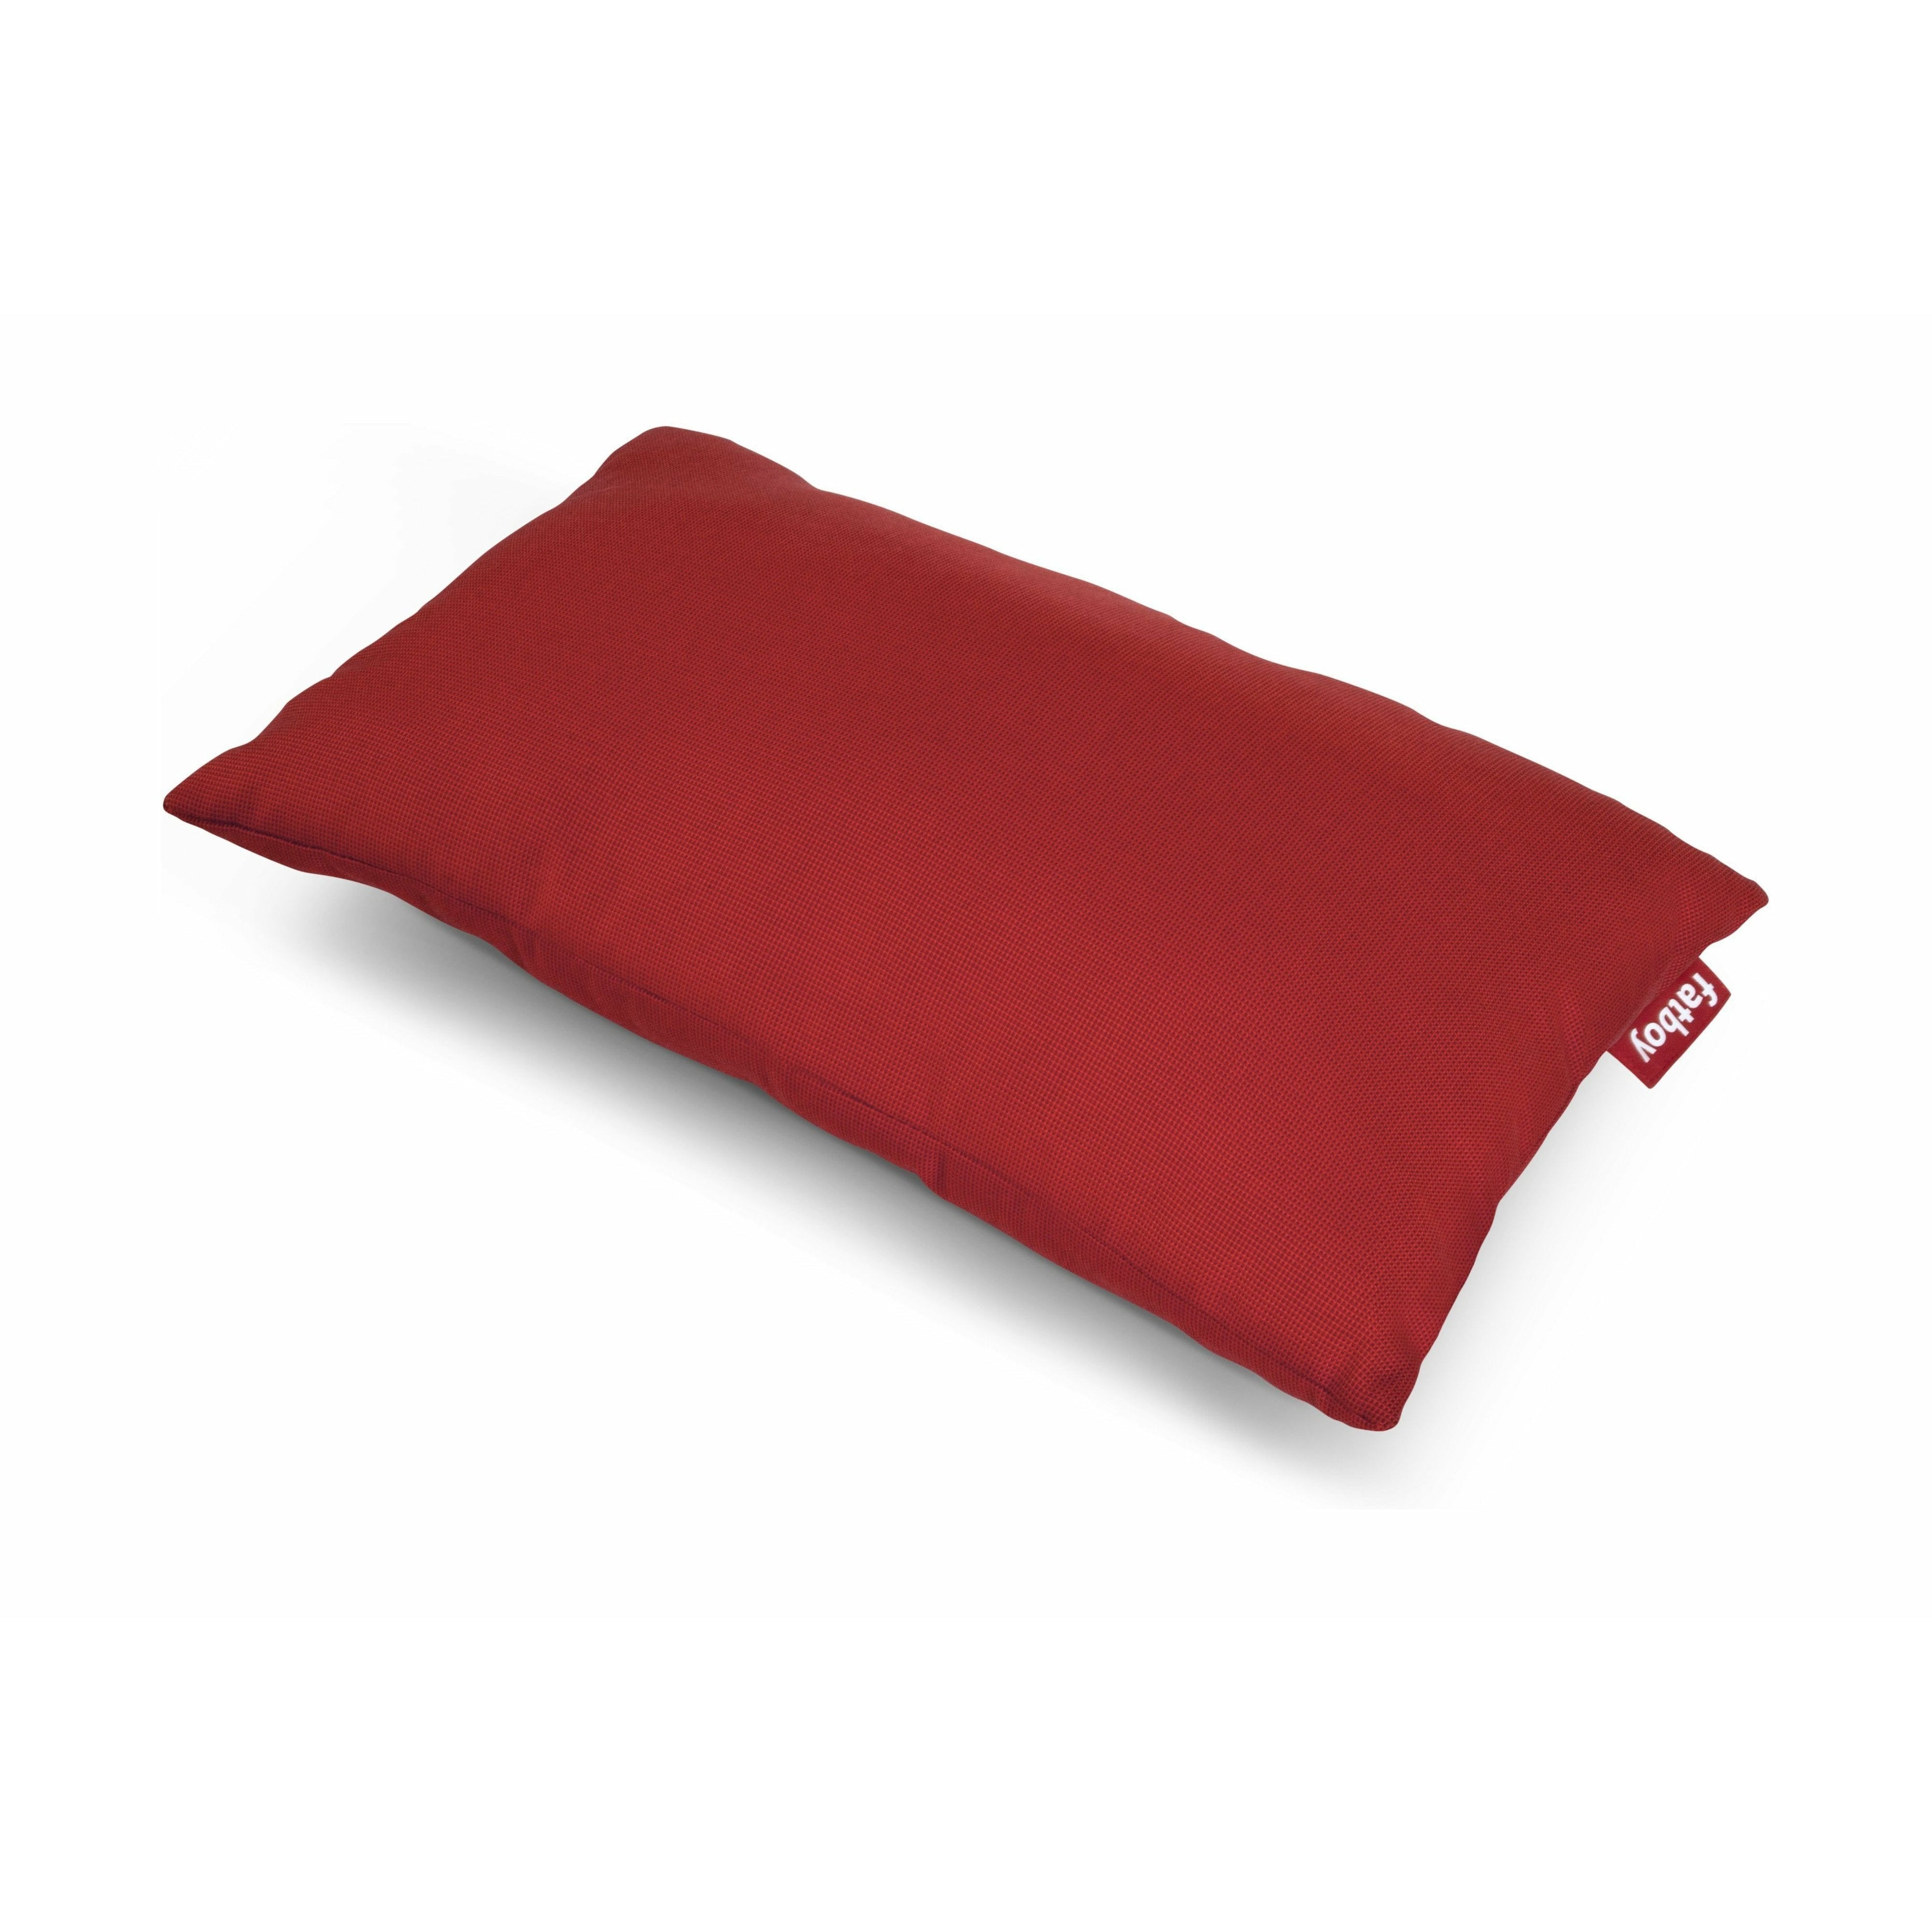 Fatboy Pillow King al aire libre, rojo